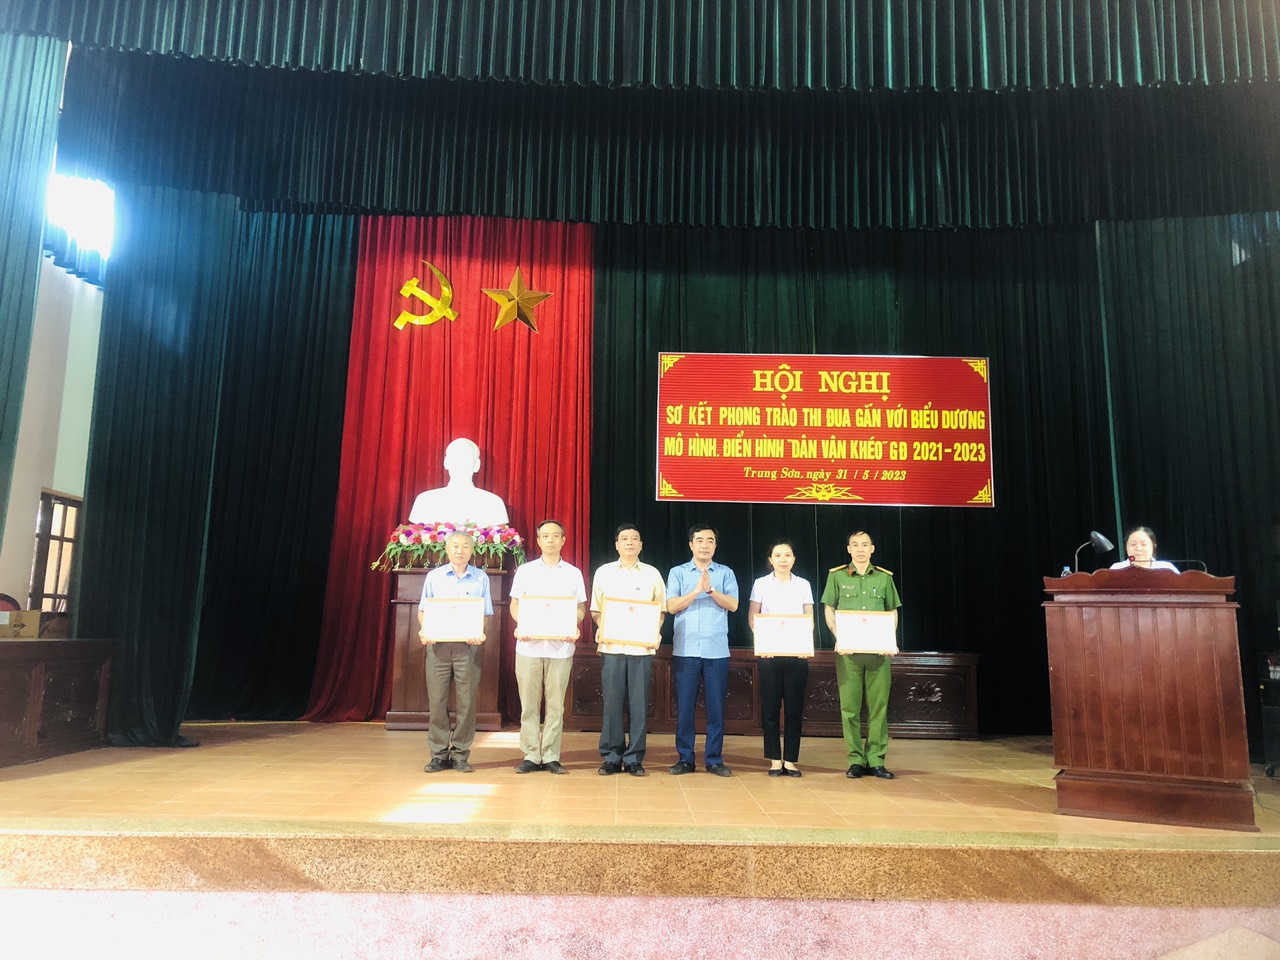 Đảng uỷ phường Trung Sơn tổ chức Hội nghị sơ kết phong trào thi đua gắn với biểu dương mô hình, điển hình “Dân vận khéo”,  giai đoạn 2021-2023